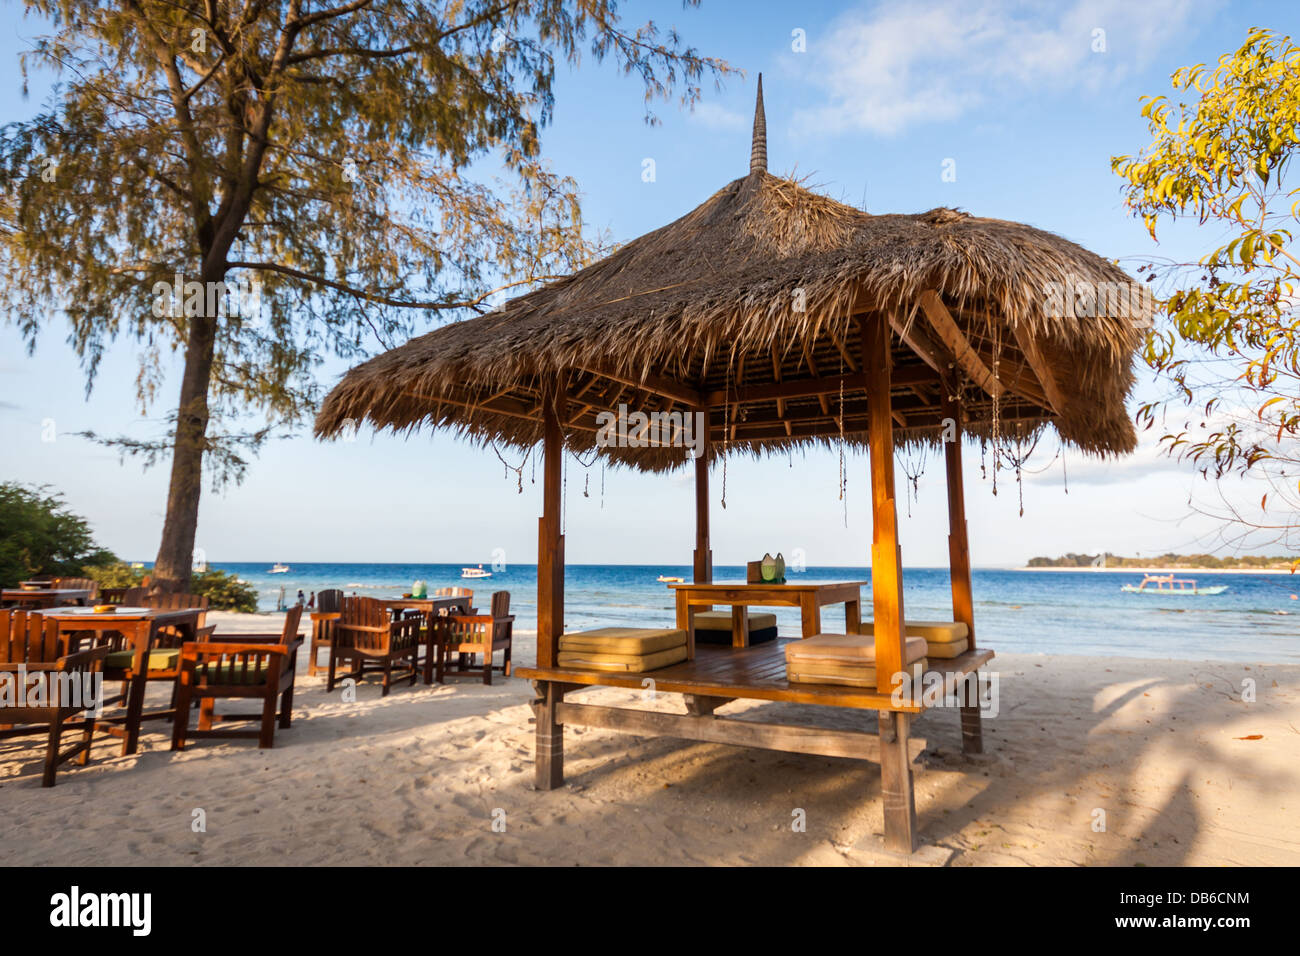 Beach restaurant on Gili island Stock Photo